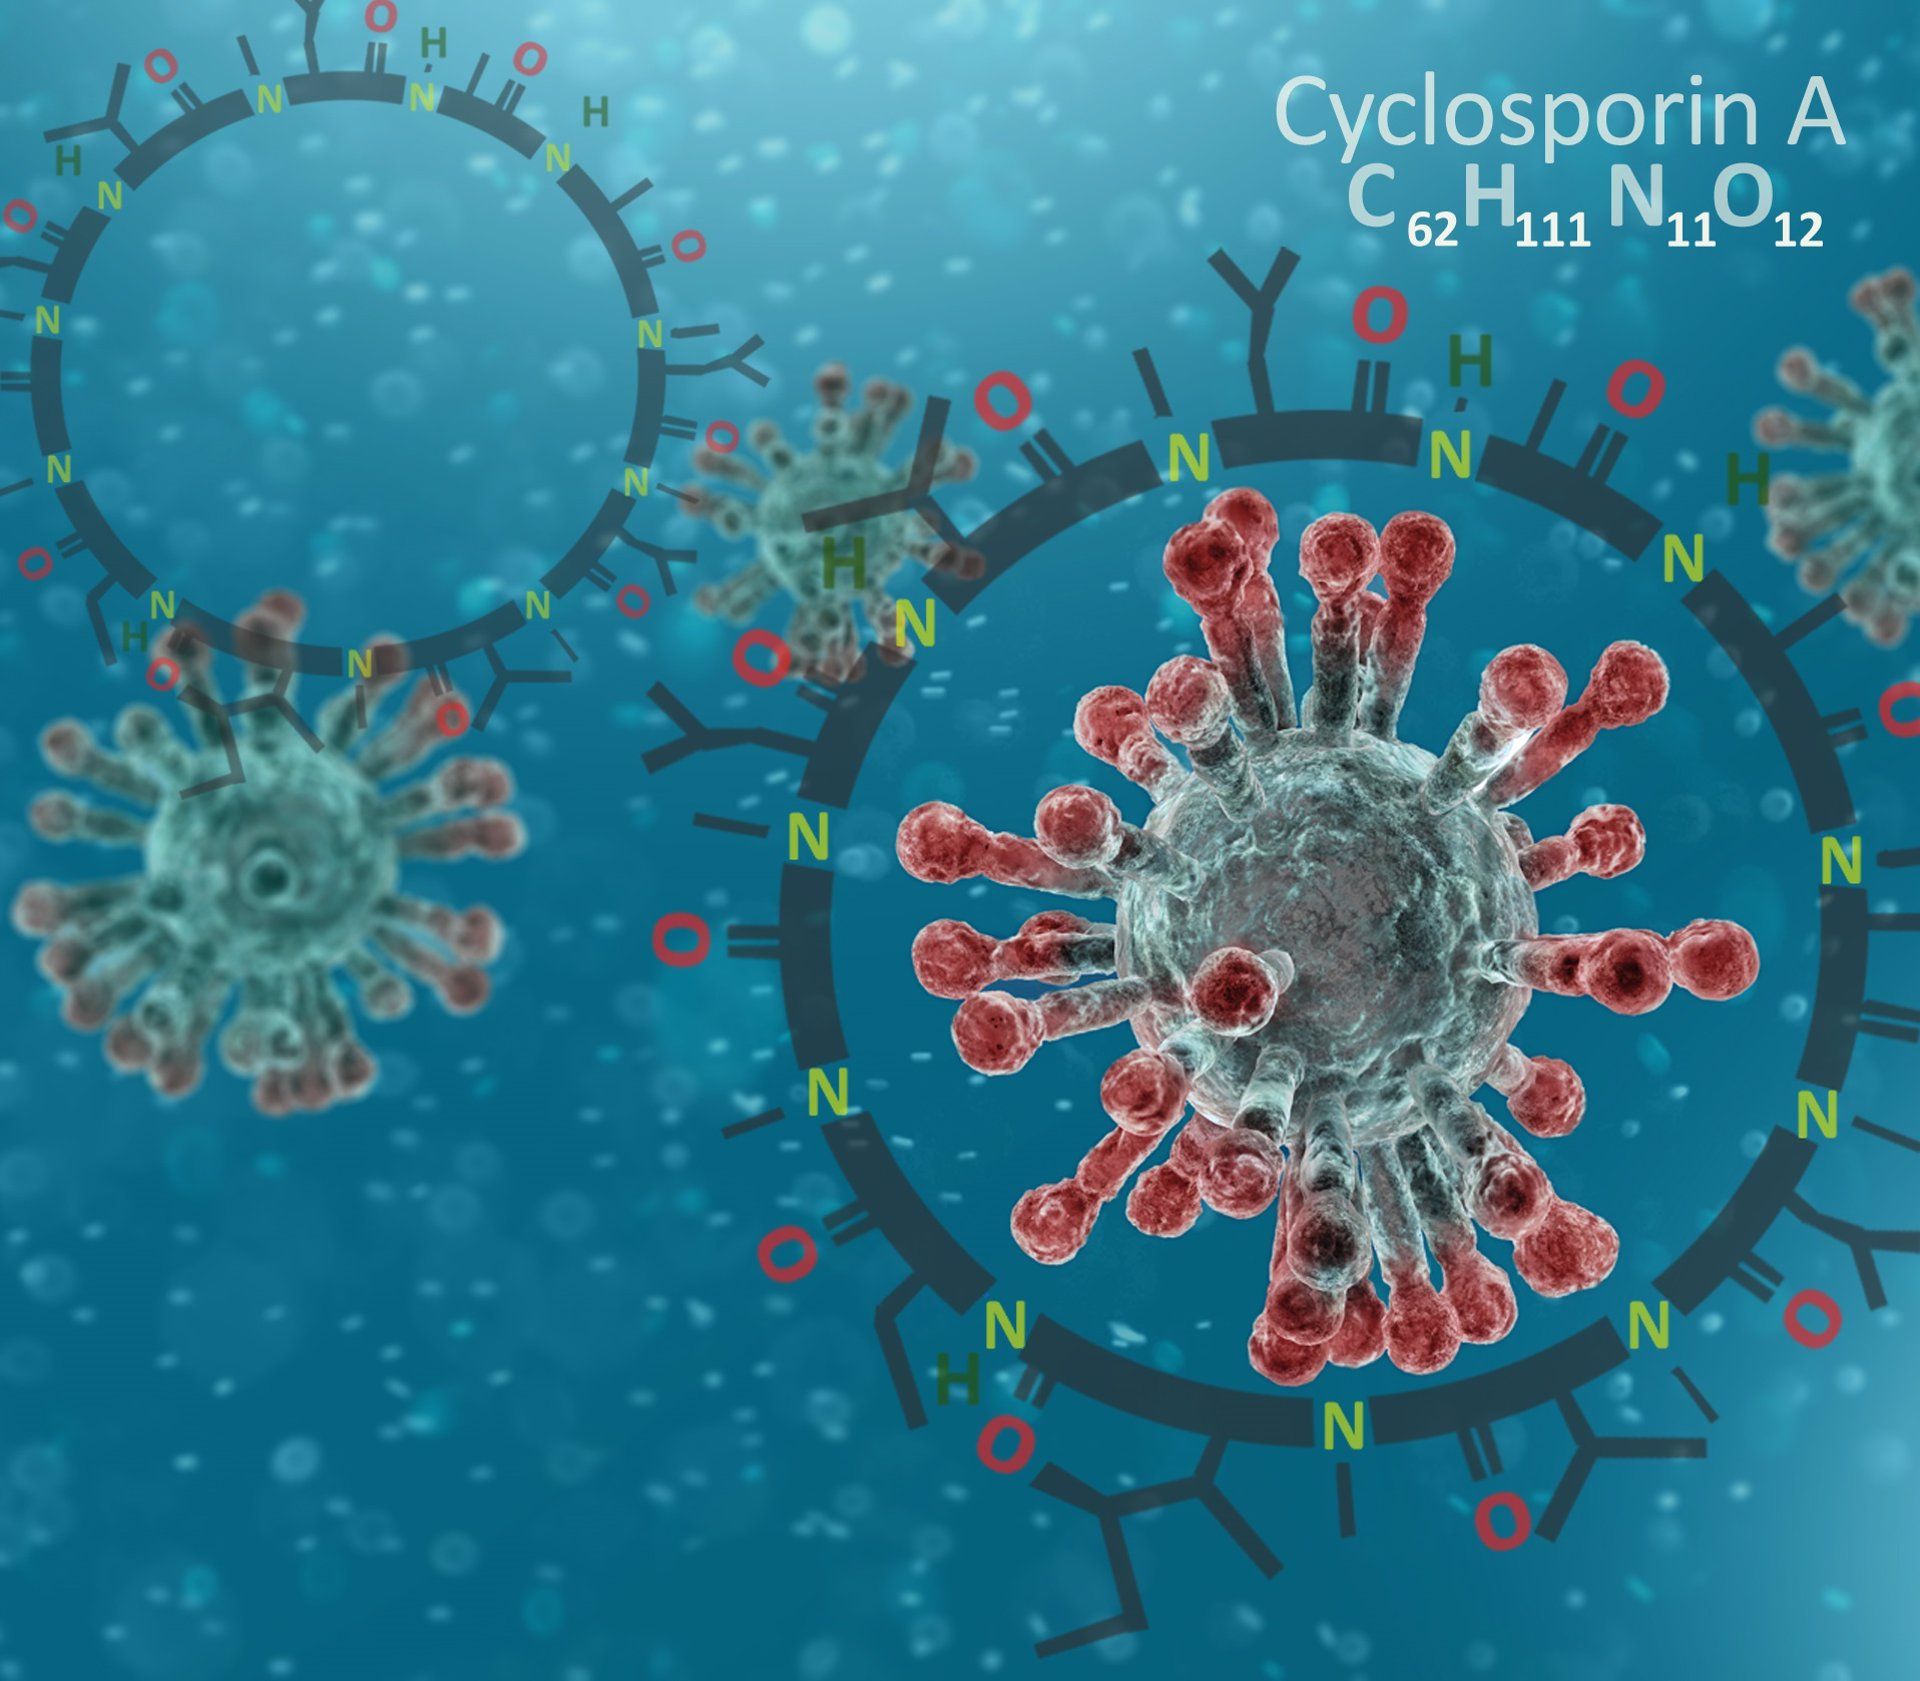 La ciclosporina, un tratamiento prometedor para pacientes hospitalizados por la COVID-19. Autor: NAEBLYS